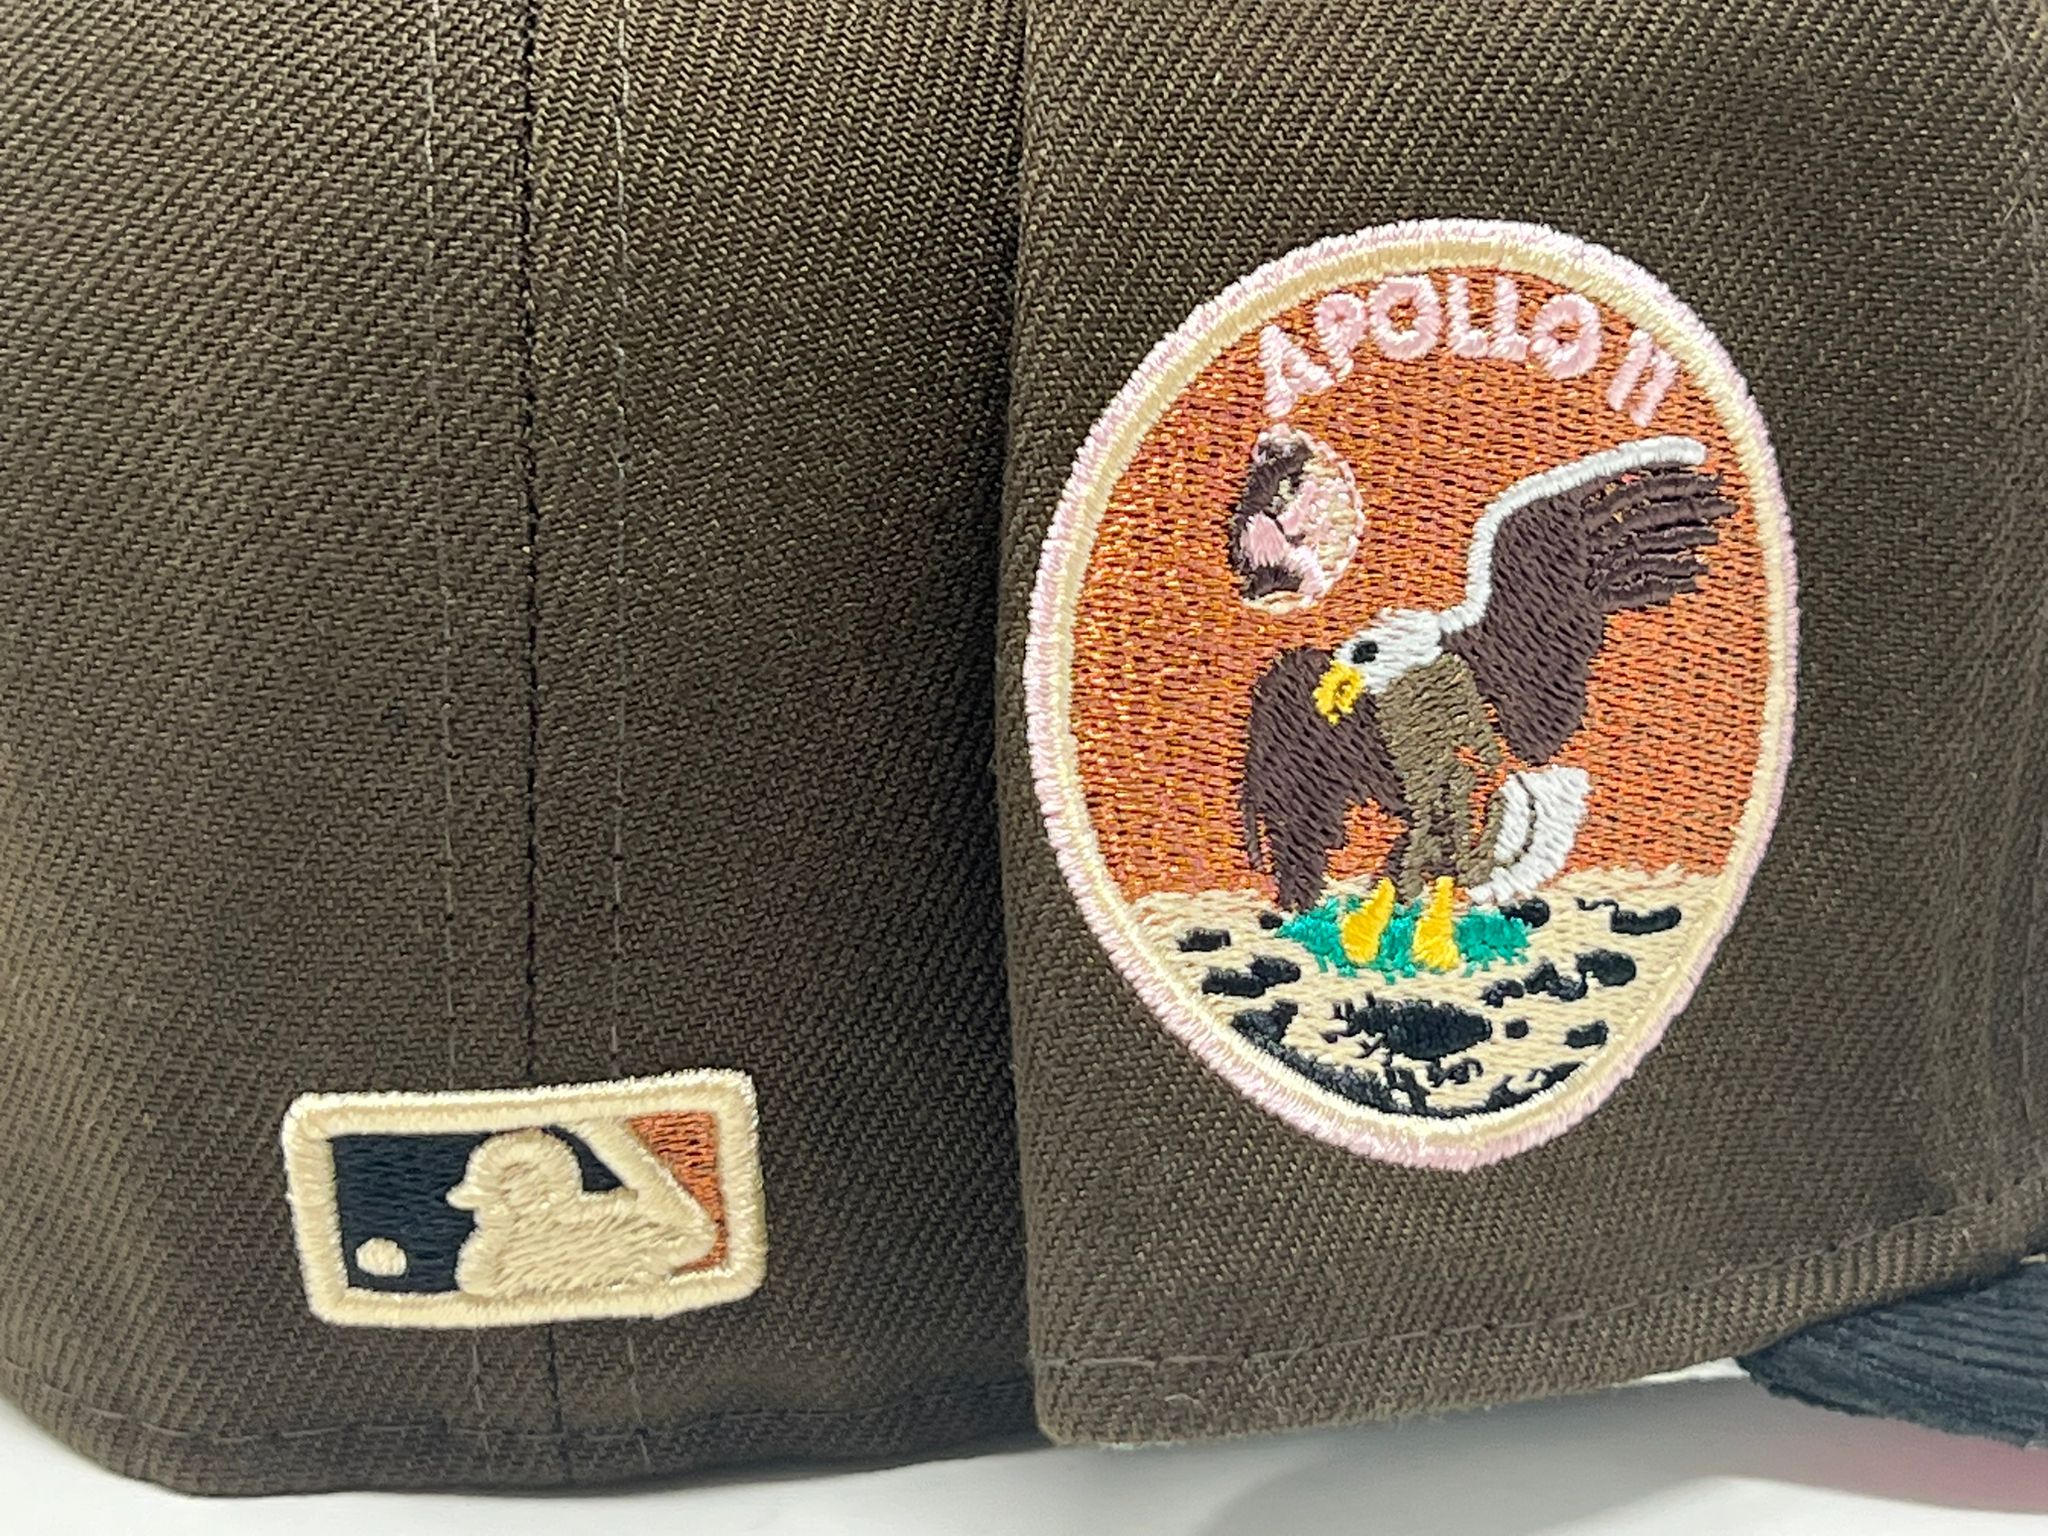 Exclusive New Era Houston Astros Hat MLB Club Size 7 1/4 Apollo 11 Brown